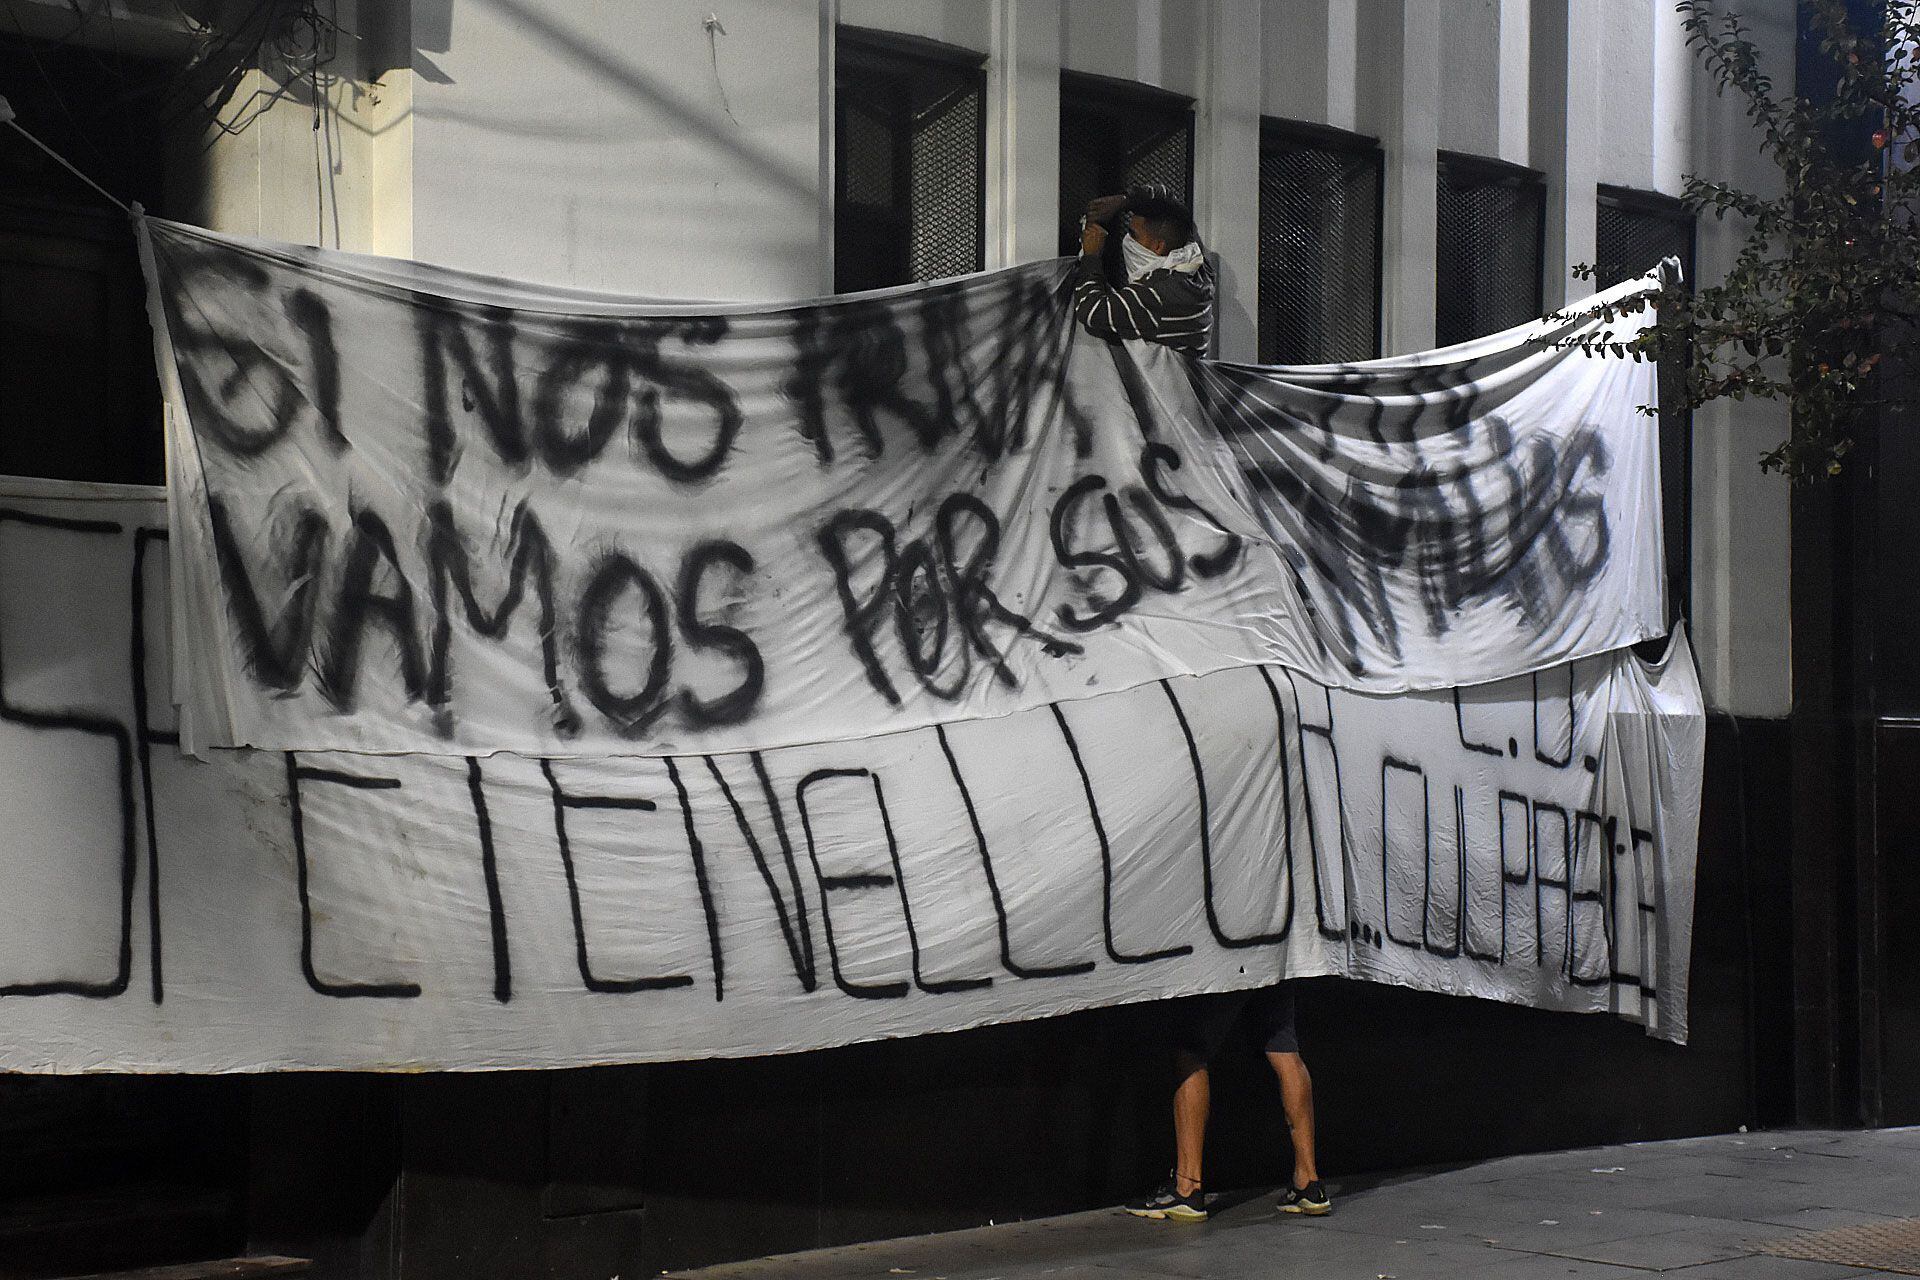 Protesta Sede independiente - Avellaneda